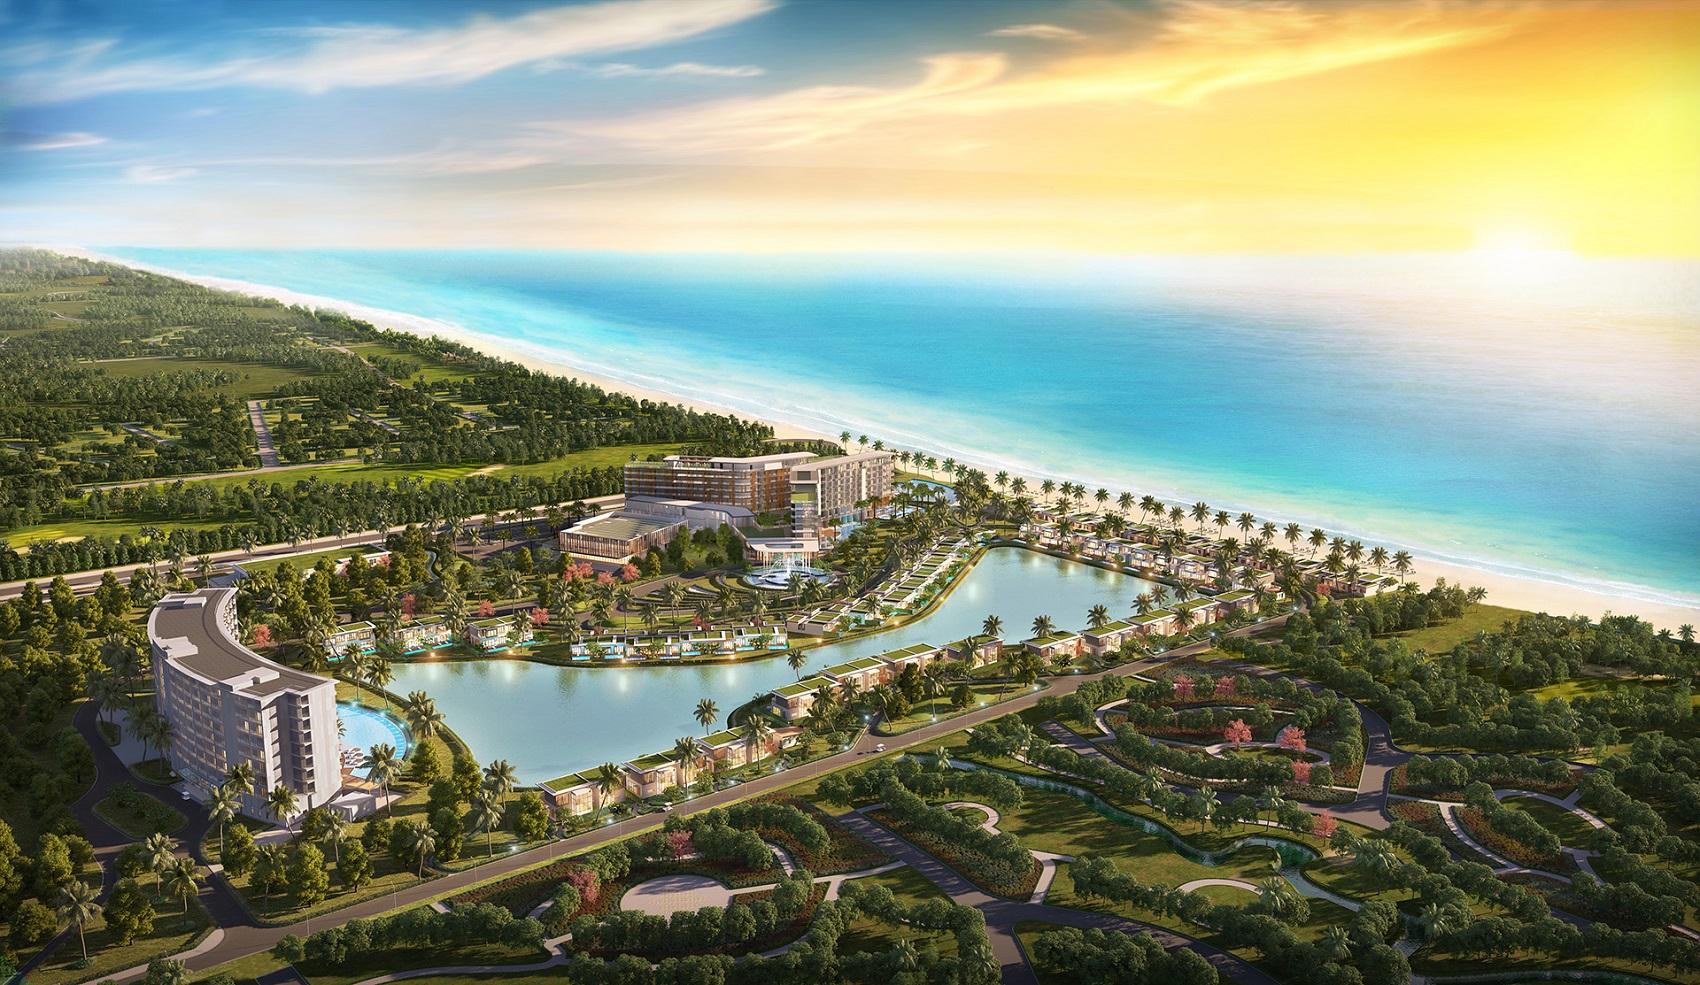 Sun Property ra mắt quần thể nghỉ dưỡng bên Bãi Ông Lang Phú Quốc - Ảnh 1.